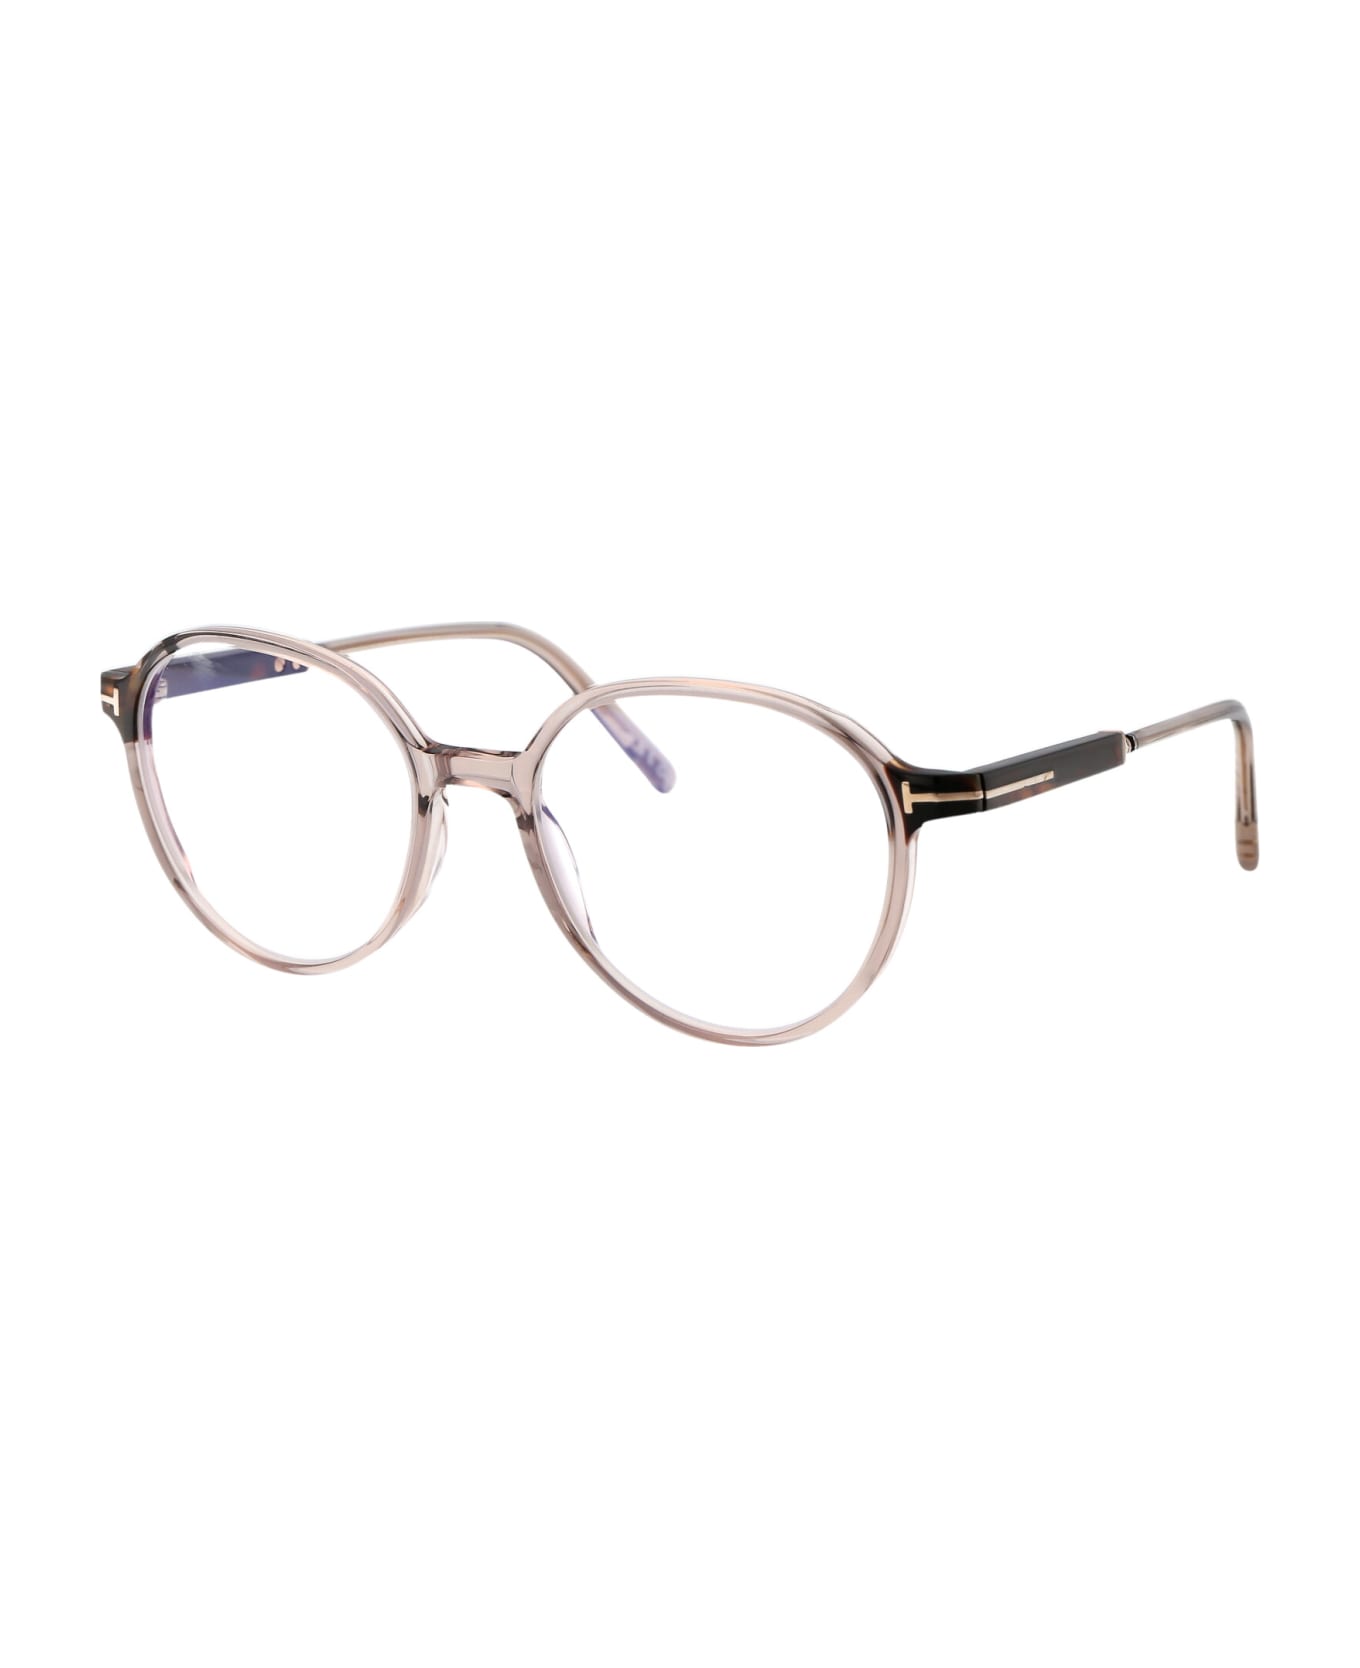 Tom Ford Eyewear Ft5910-b Glasses - 045 Marrone Chiaro Luc